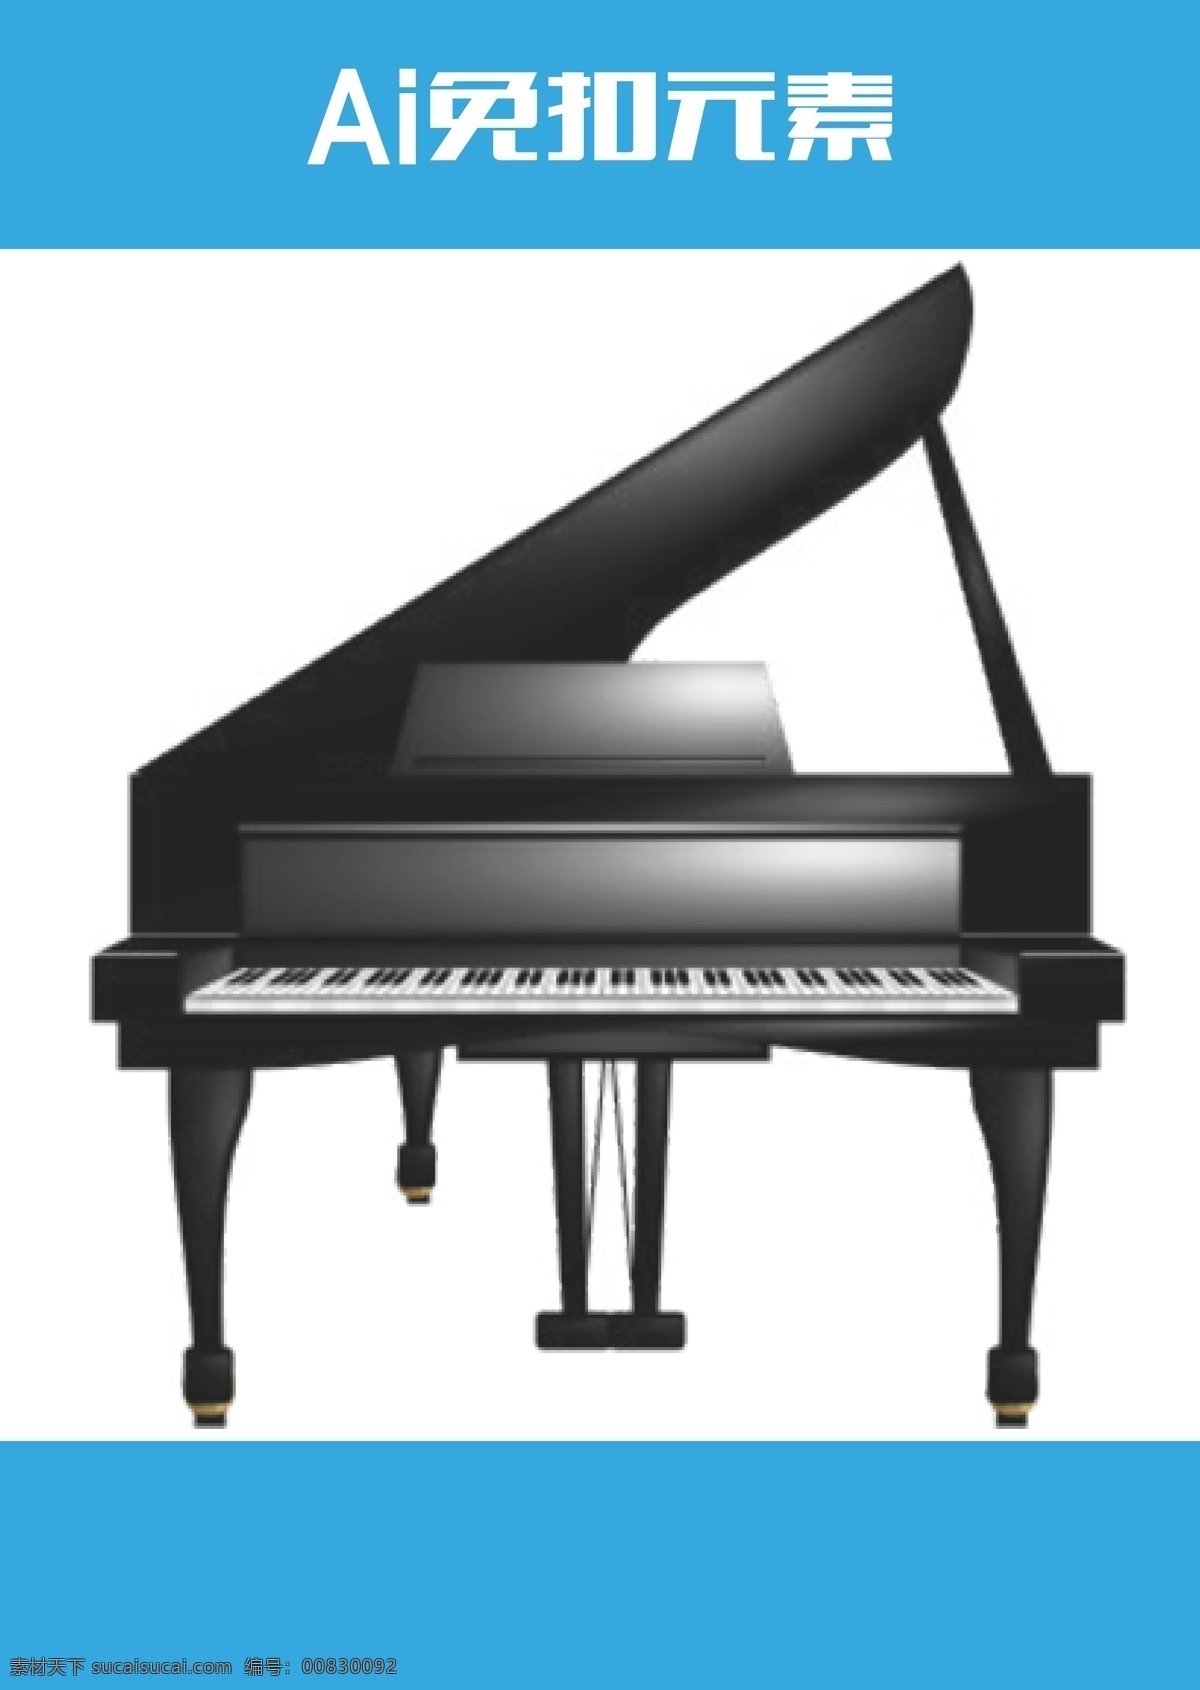 钢琴键 琴键 古典音乐 演奏厅 白色的键 乐器 音乐 播放 做音乐 钢琴家 音乐家 弹钢琴 旋律 钢琴厅 艺术世家